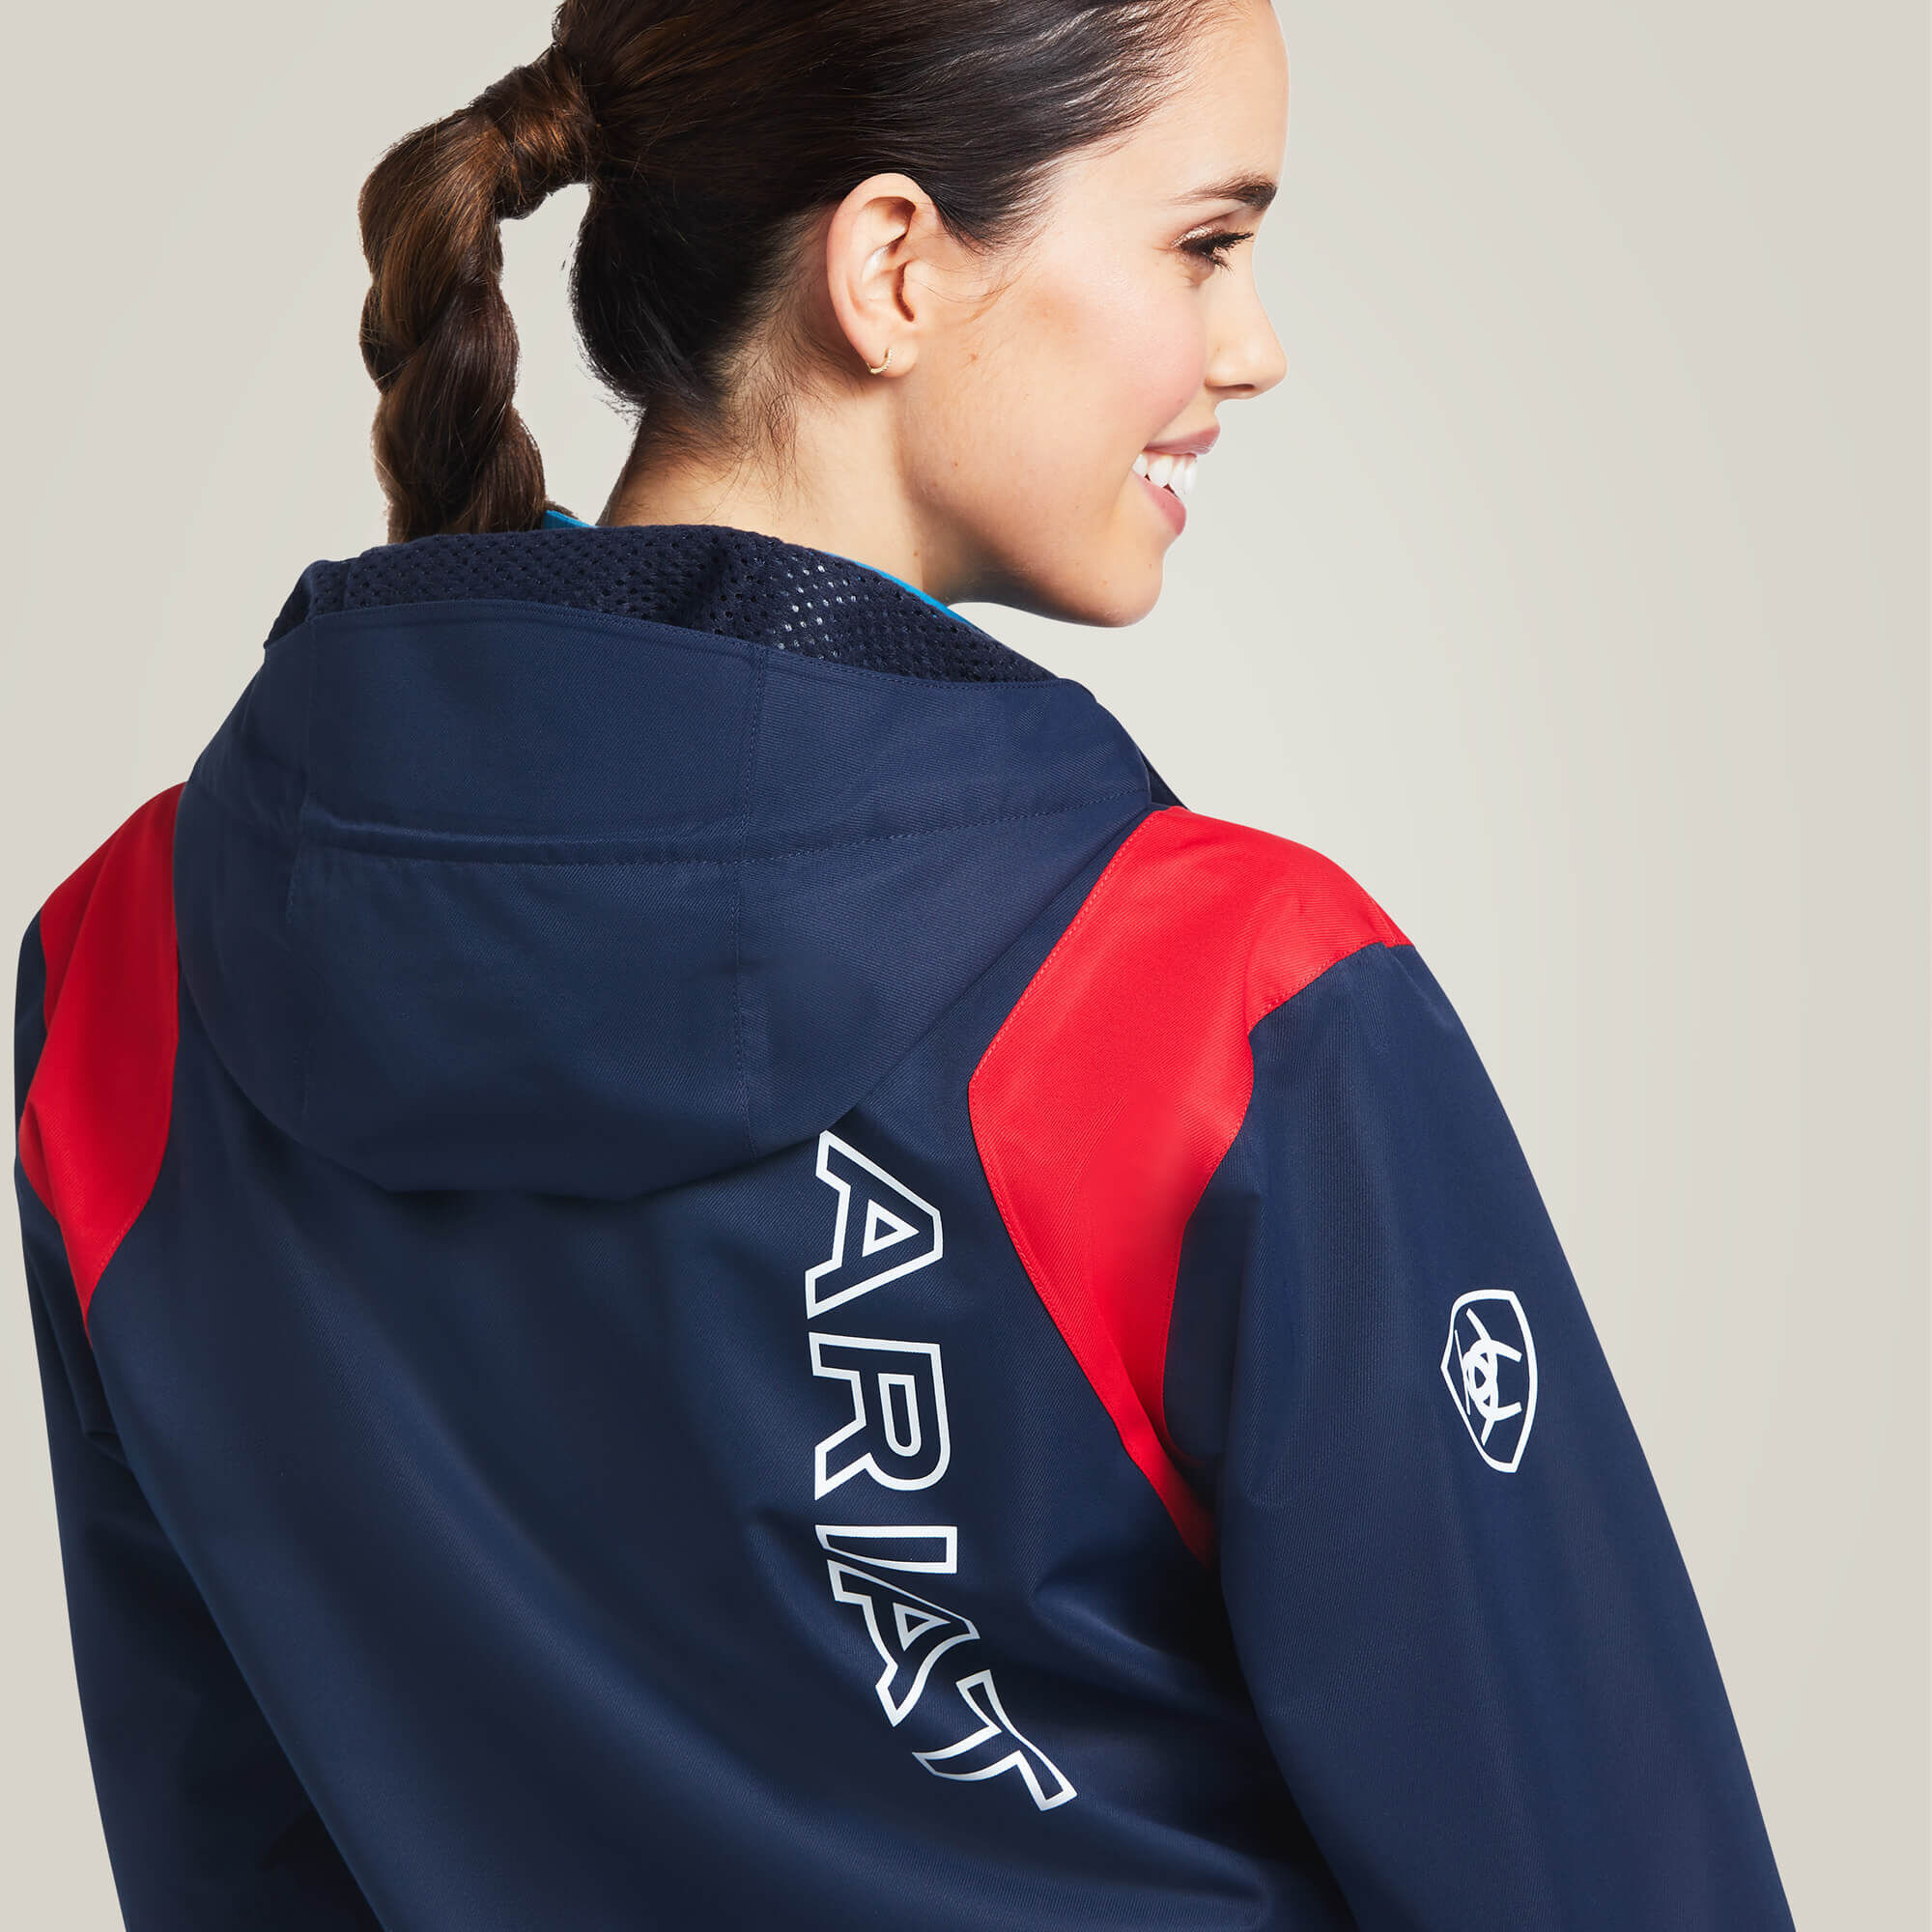 Women's Spectator Waterproof Jacket, Size: Medium by Ariat